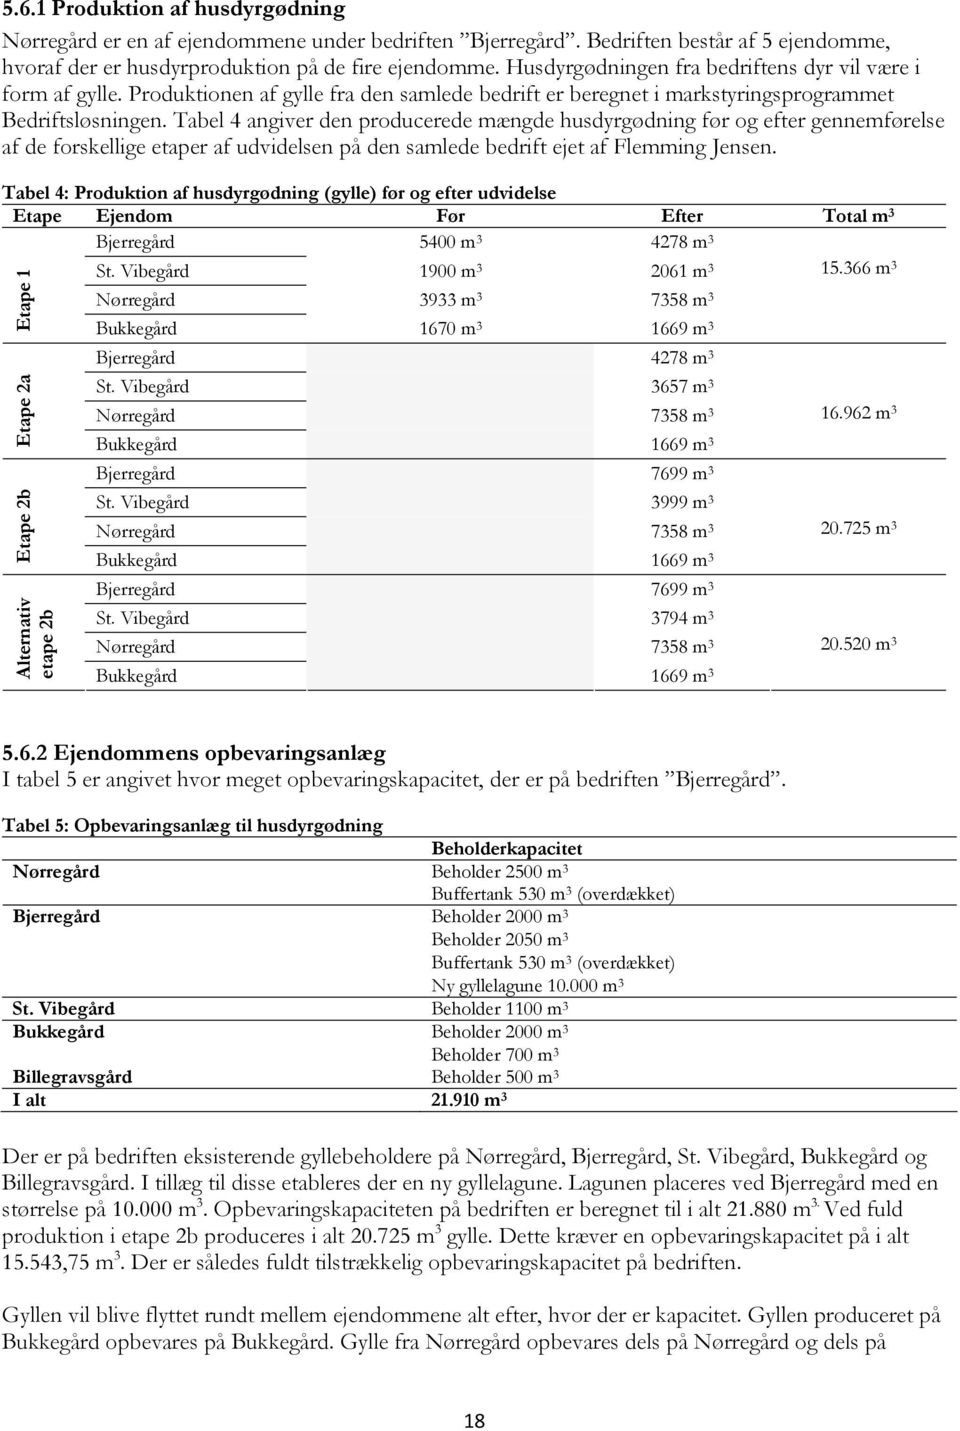 Tabel 4 angiver den producerede mængde husdyrgødning før og efter gennemførelse af de forskellige etaper af udvidelsen på den samlede bedrift ejet af Flemming Jensen.